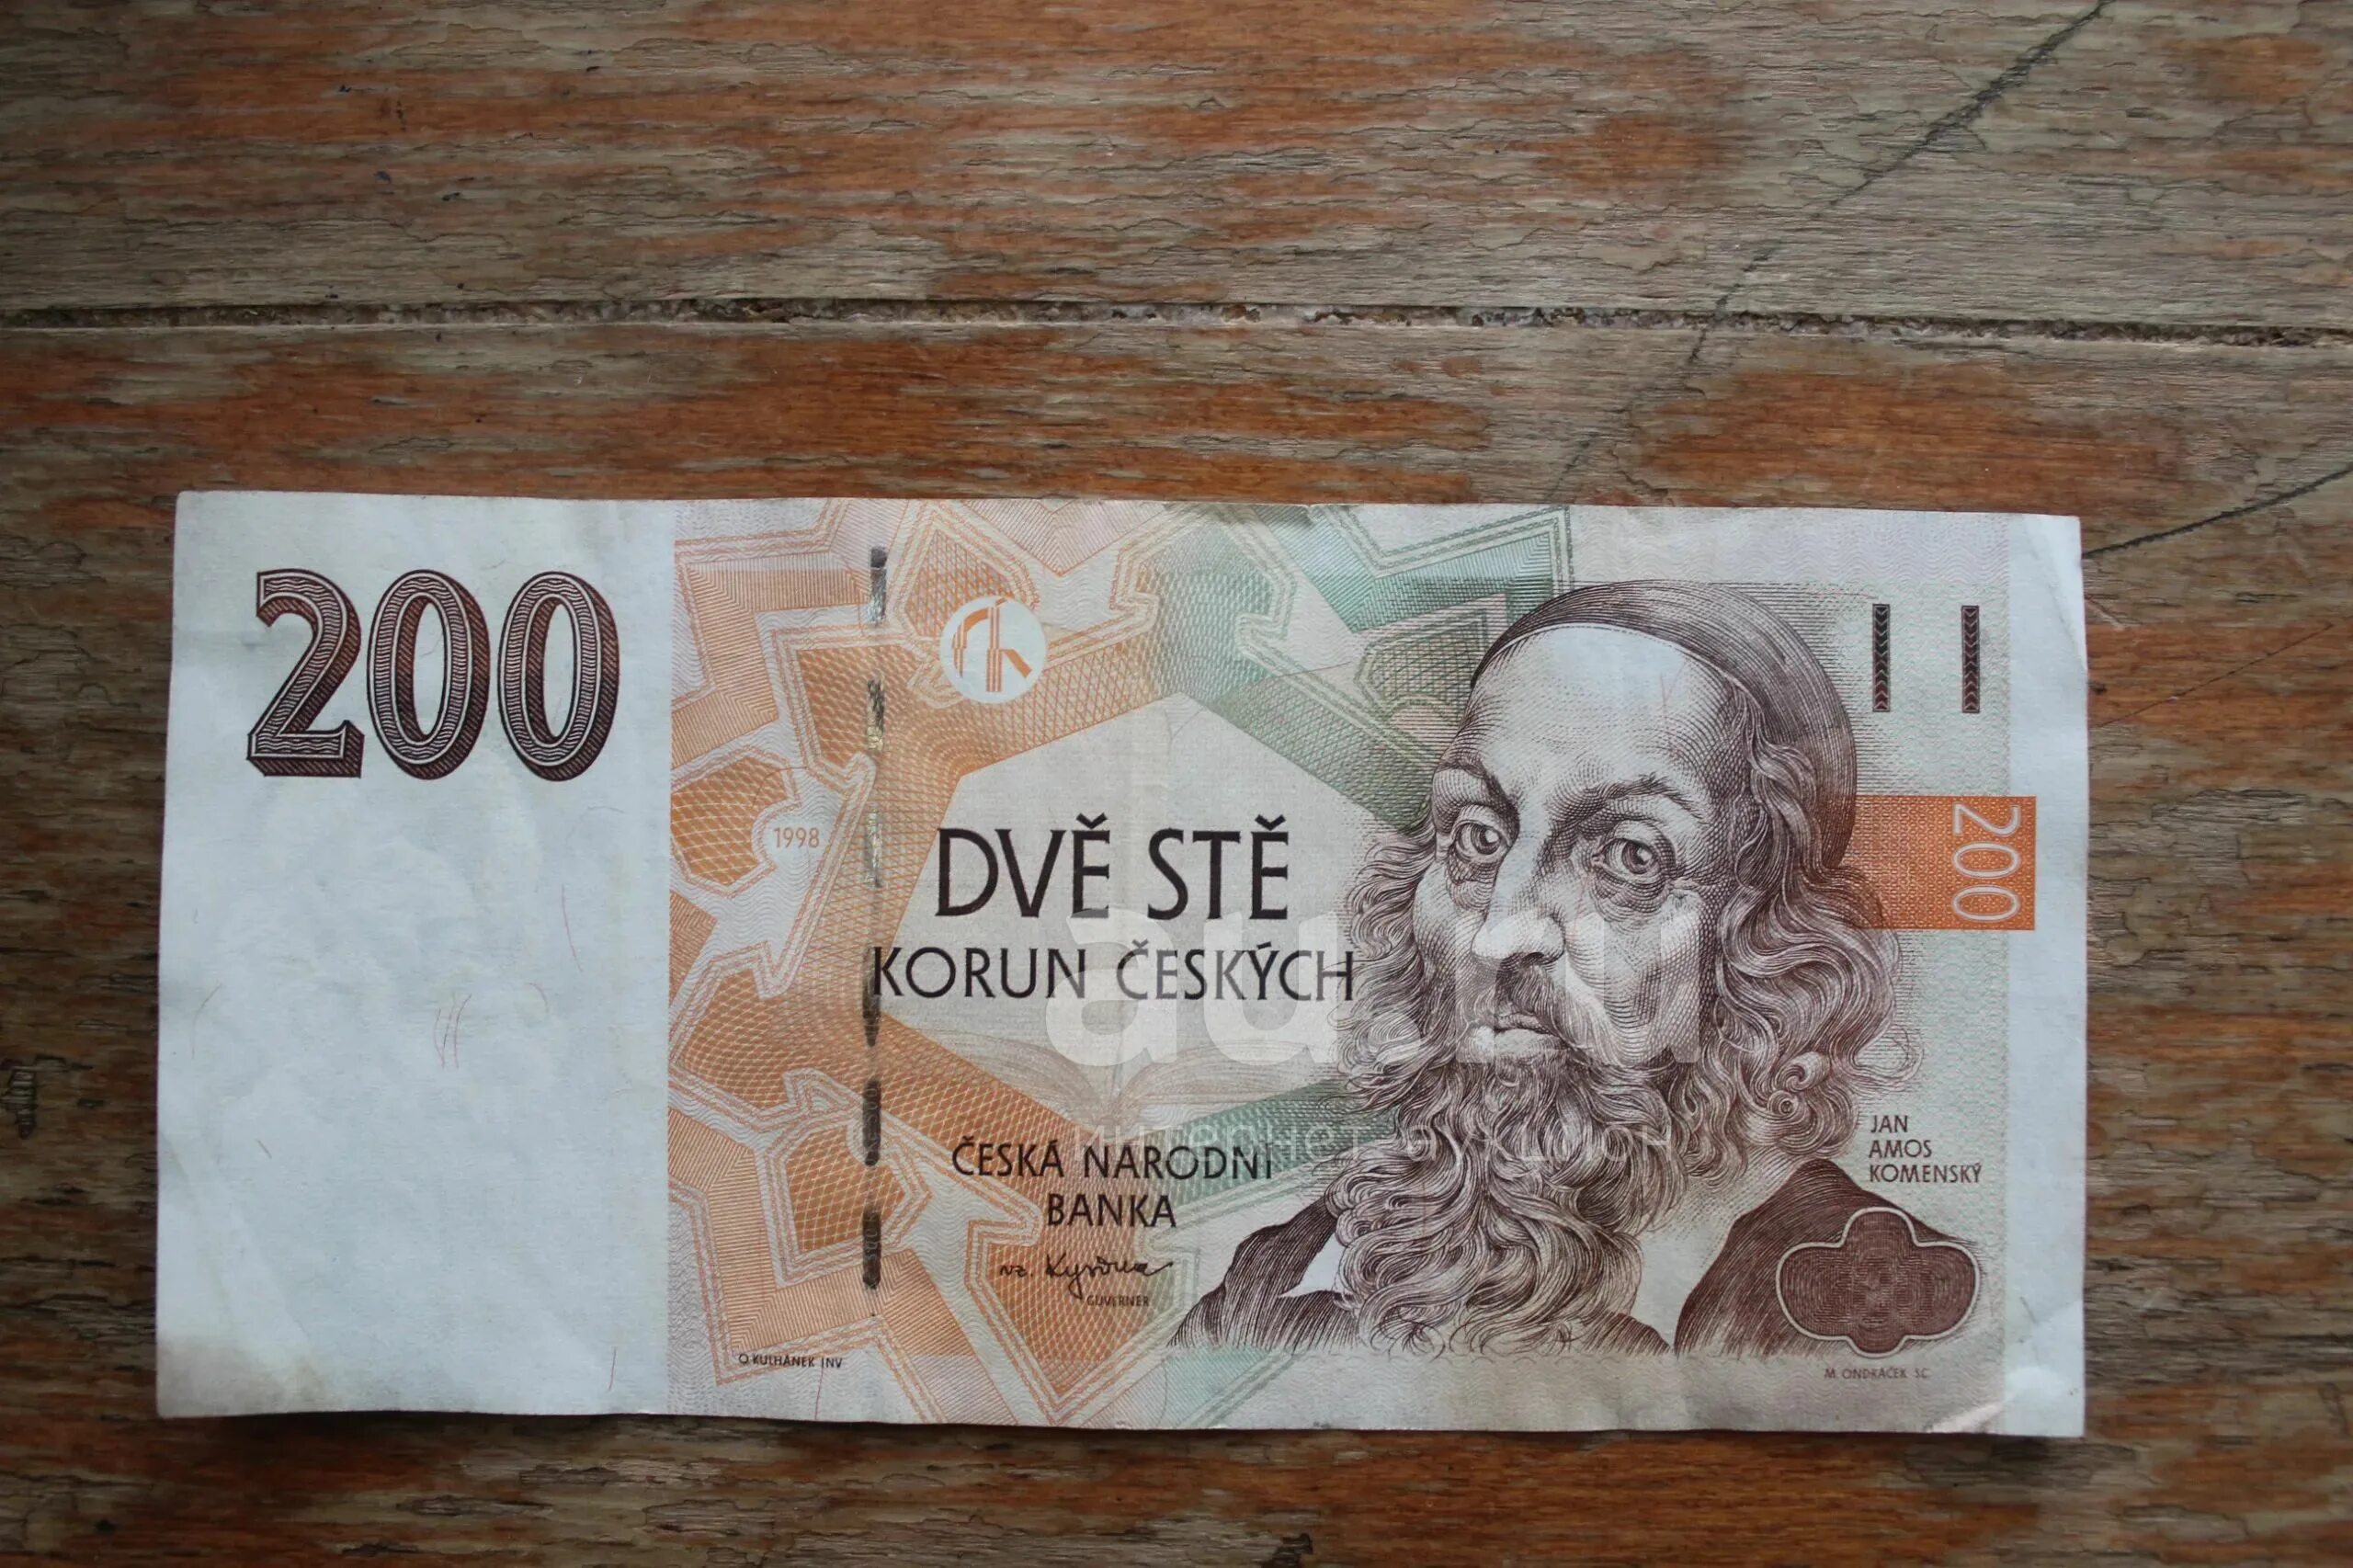 Деньги 200 korun. Korun ceskych какие деньги. Dva tisice korun в рублях. Как выглядит 200 коруни.